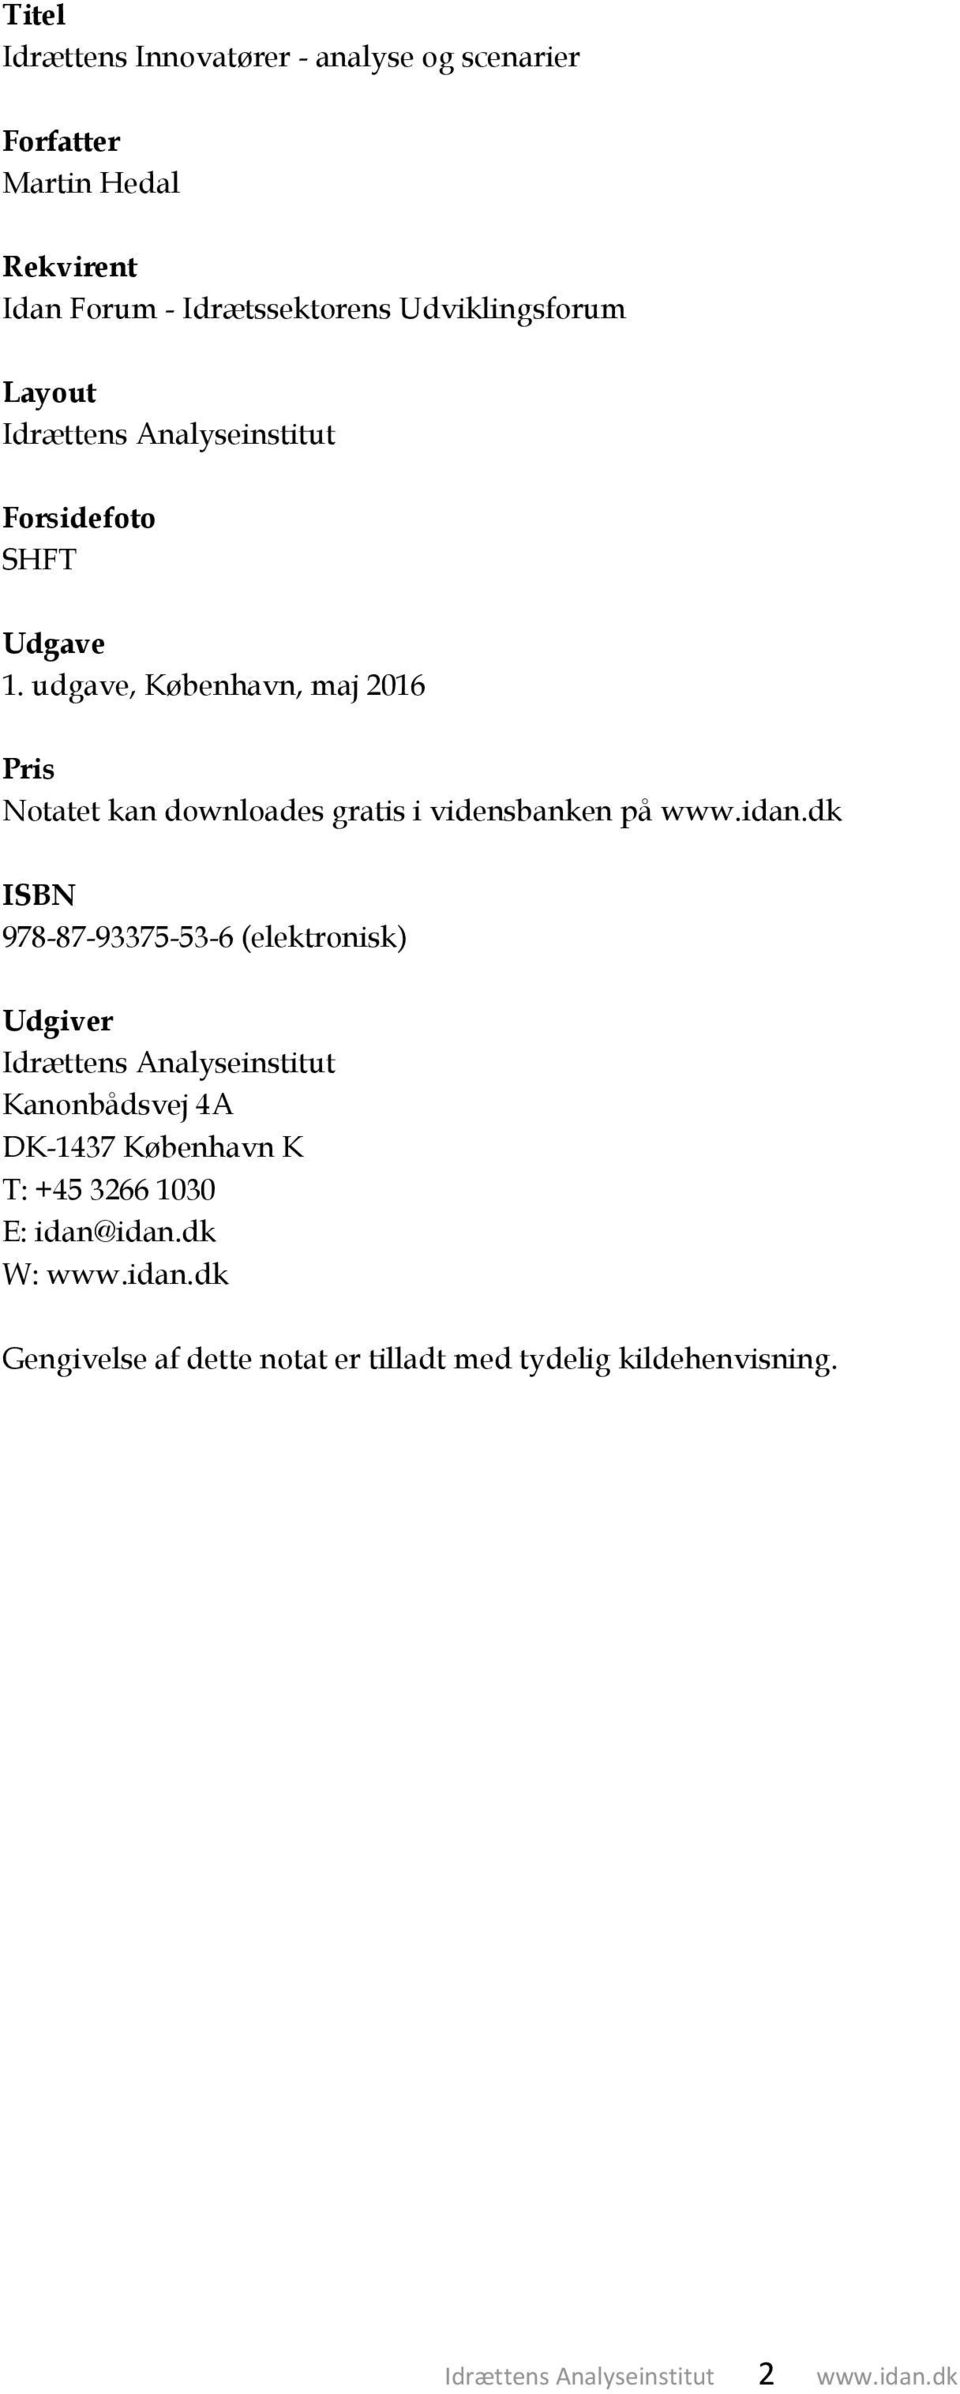 udgave, København, maj 2016 Pris Notatet kan downloades gratis i vidensbanken på www.idan.